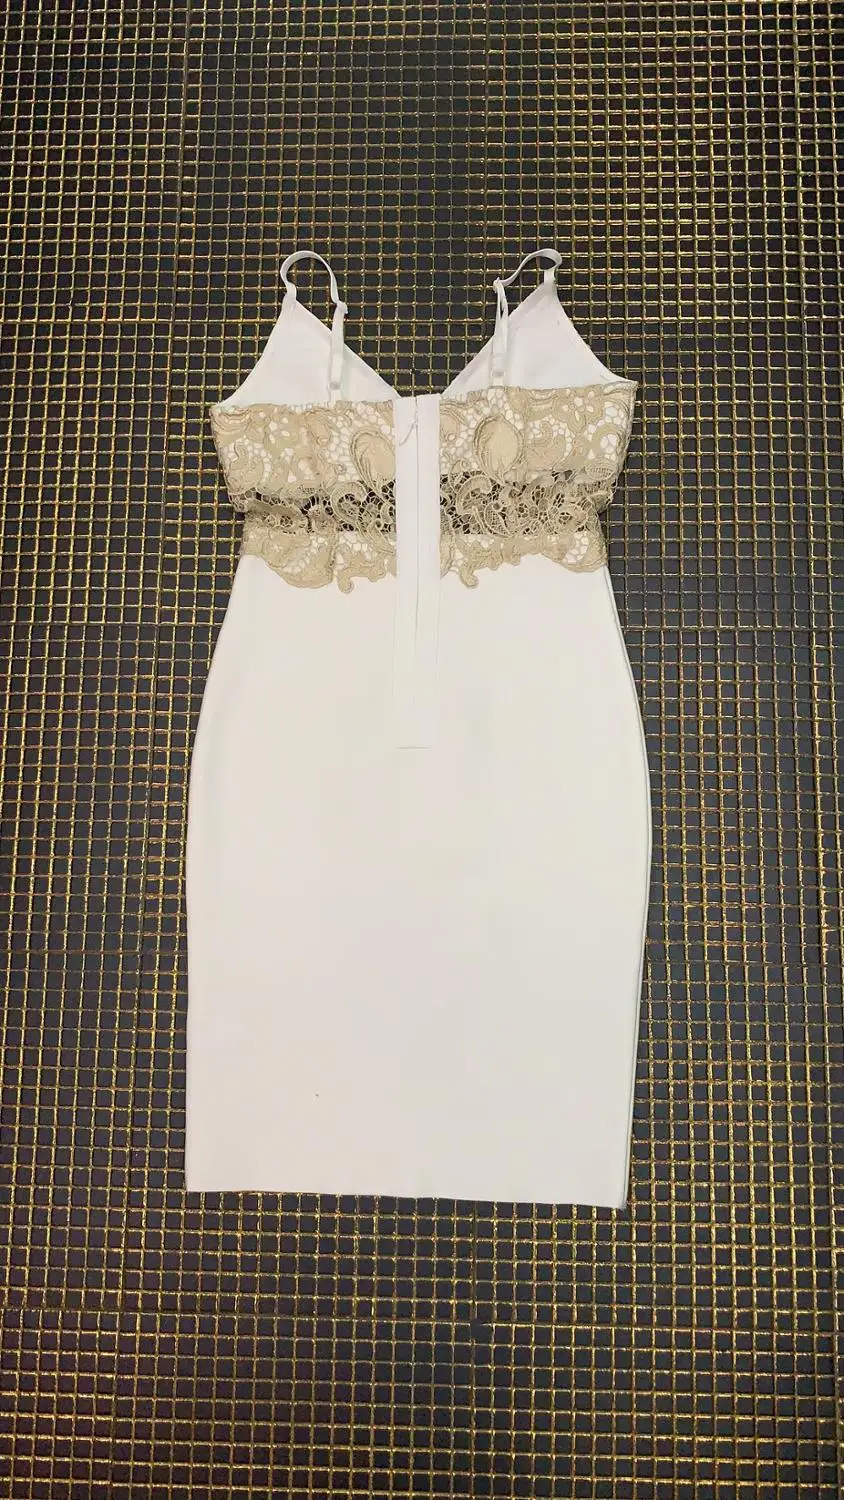 Высокое качество знаменитости белый скольжения район Бандажное платье Ночной вечерние элегантное платье